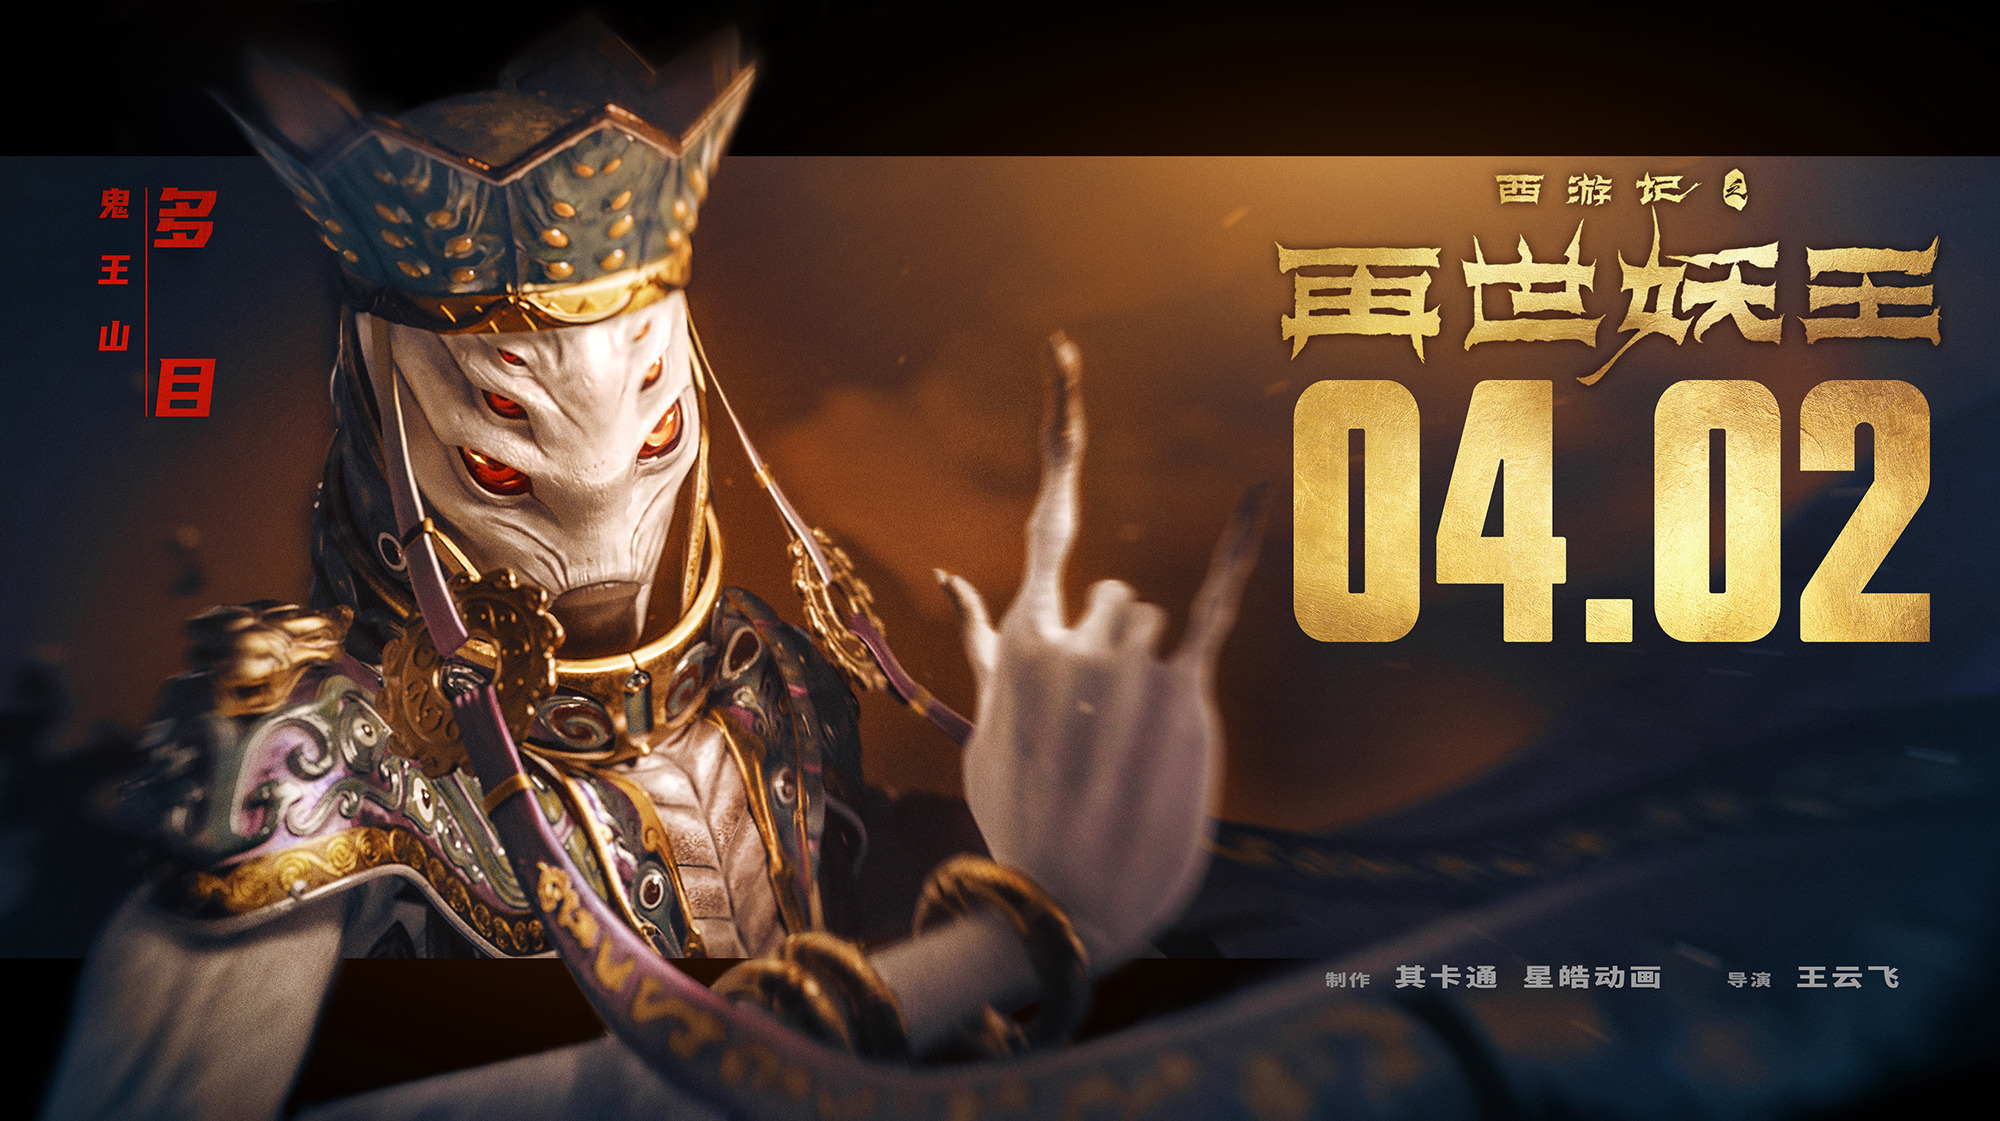 Mega Sized Movie Poster Image for Xi You Ji Zhi Zai Shi Yao Wang (#4 of 21)